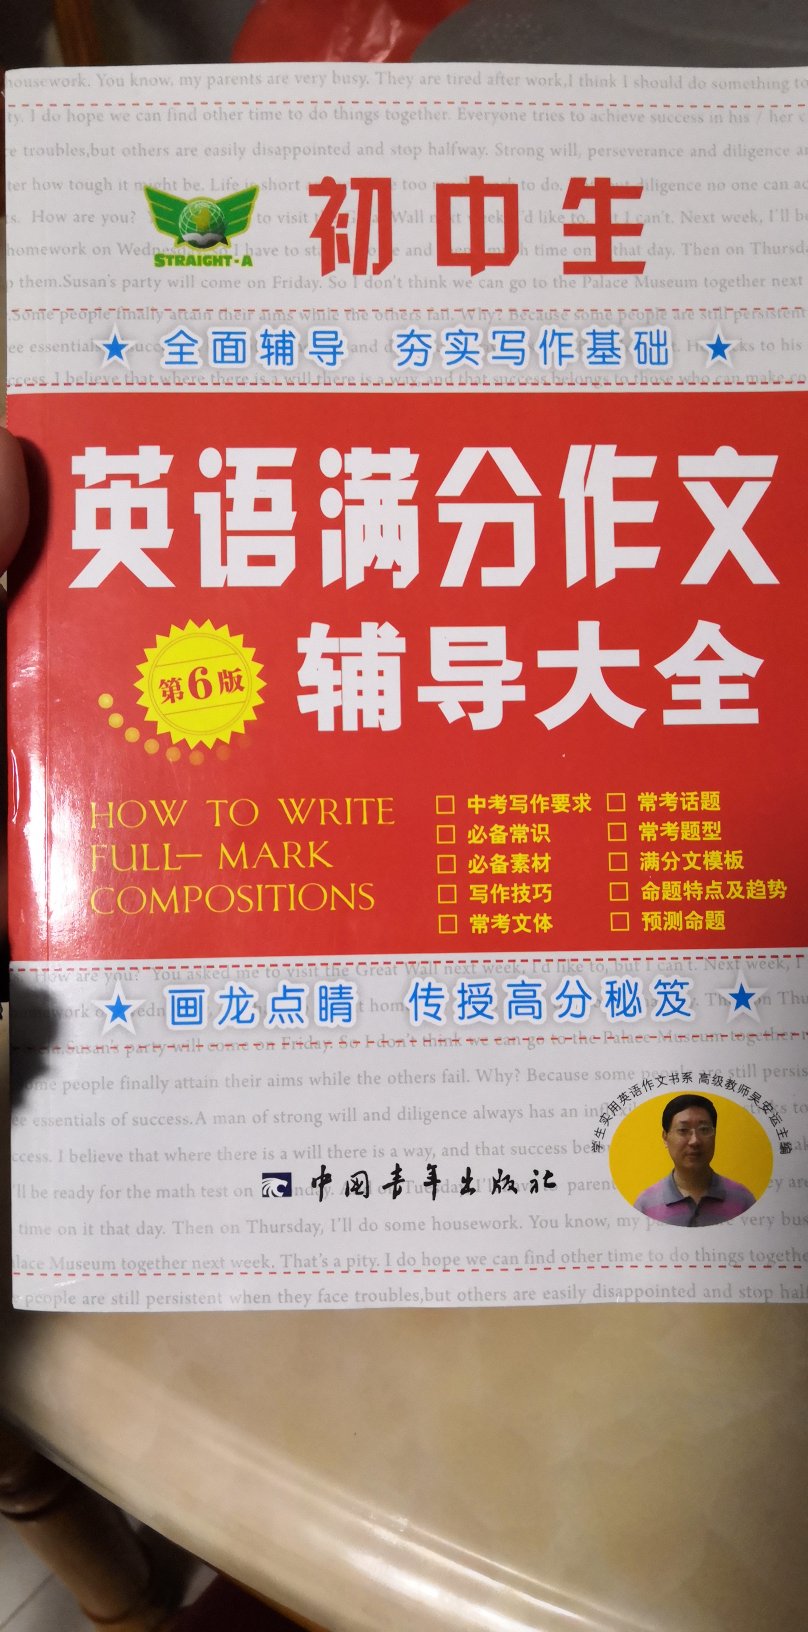 很好的一本书，希望自己的英语作文可以考的更好